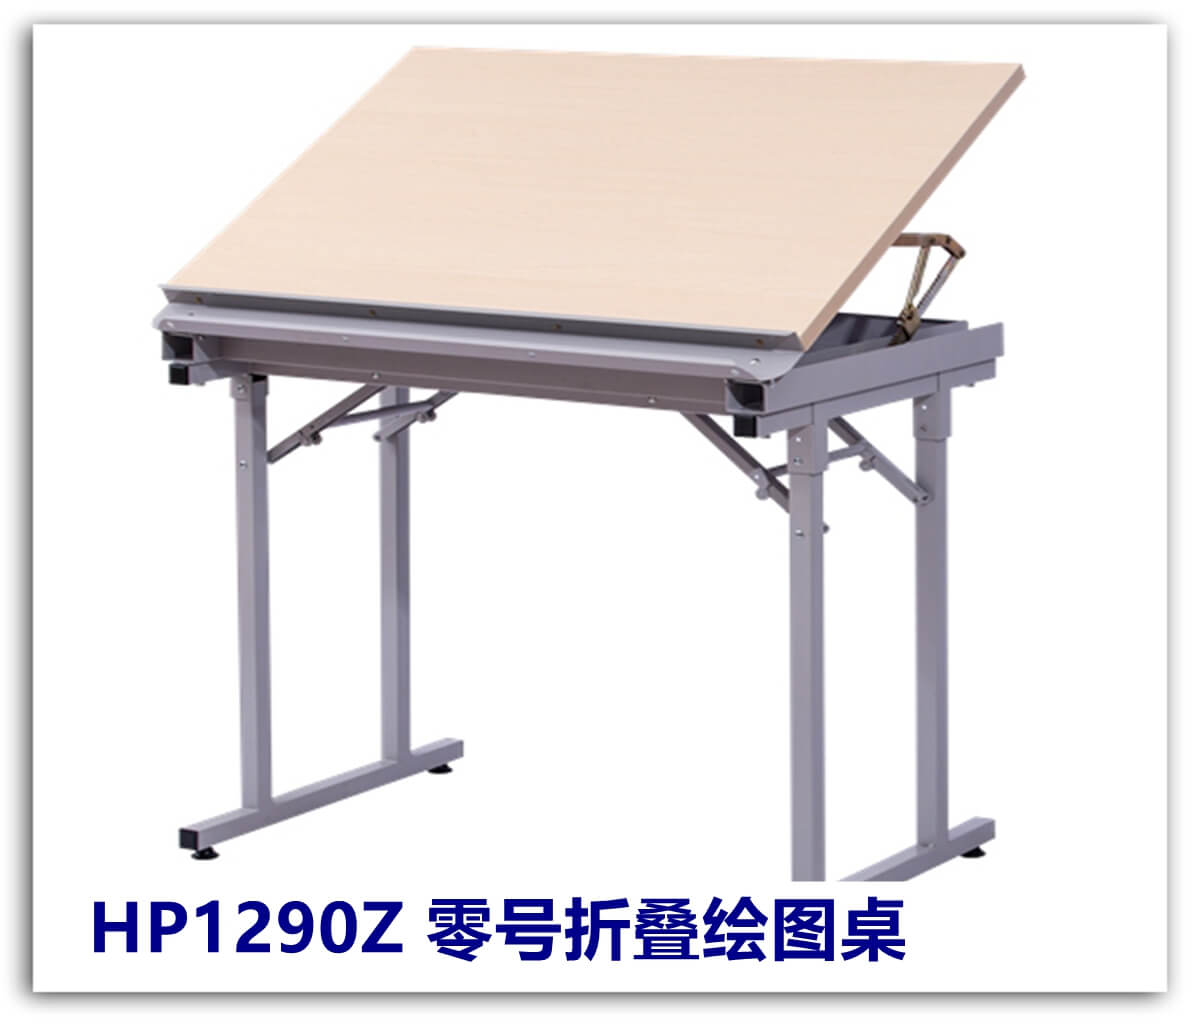 H1290Z 零号折叠绘图桌